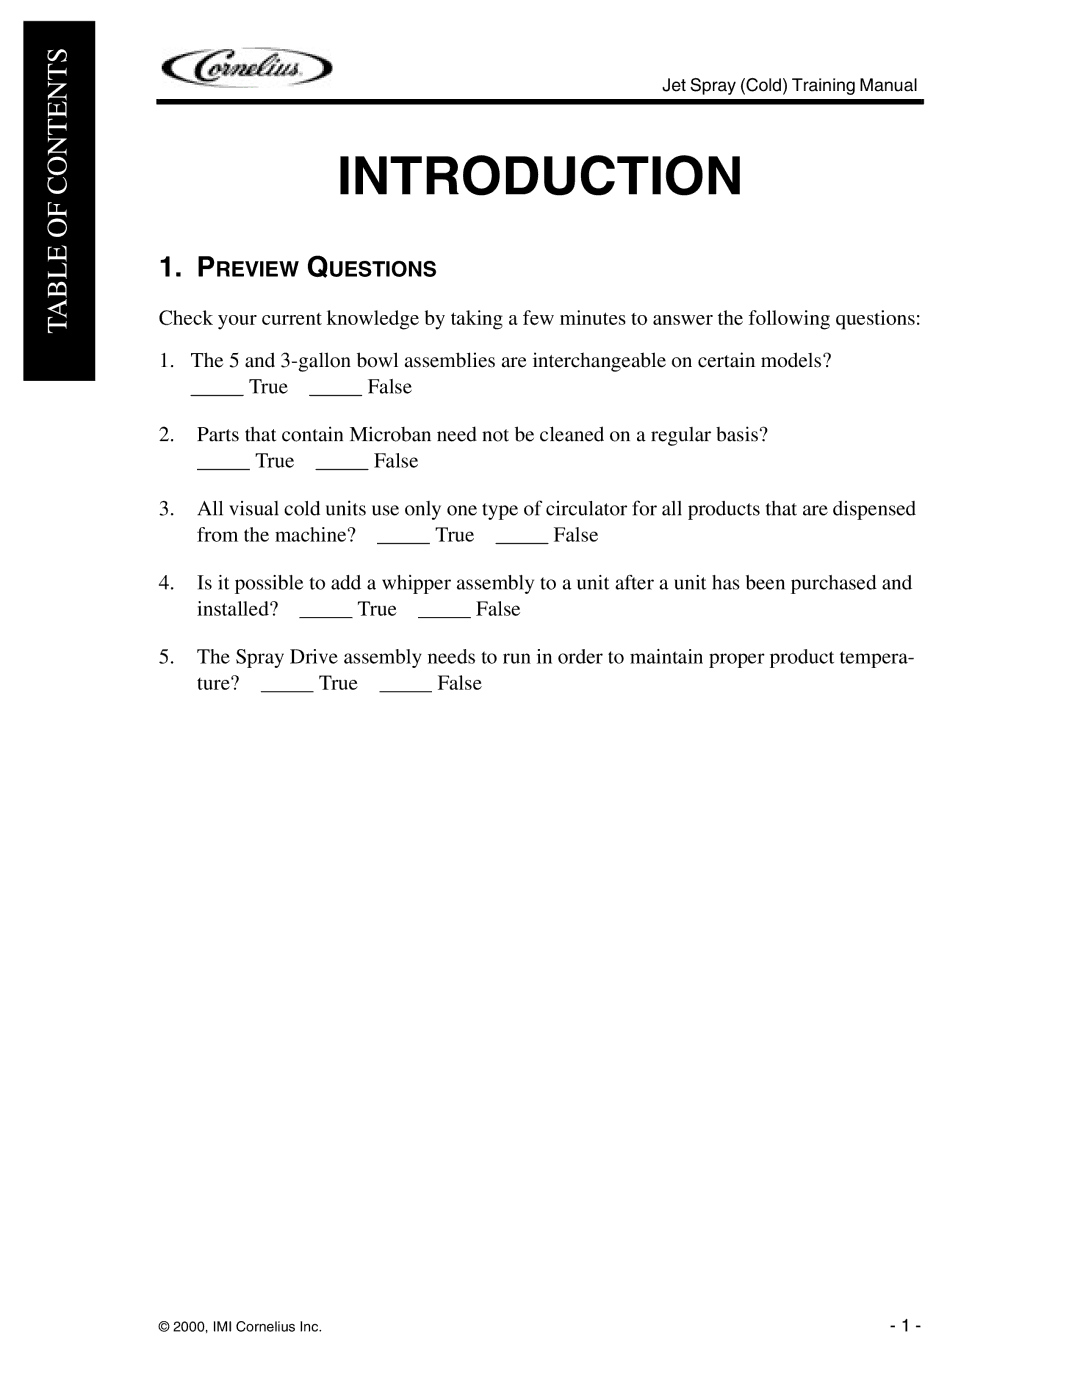 Cornelius JT20, JS7, J15, EJ1, JT30 manual Introduction, Preview Questions 